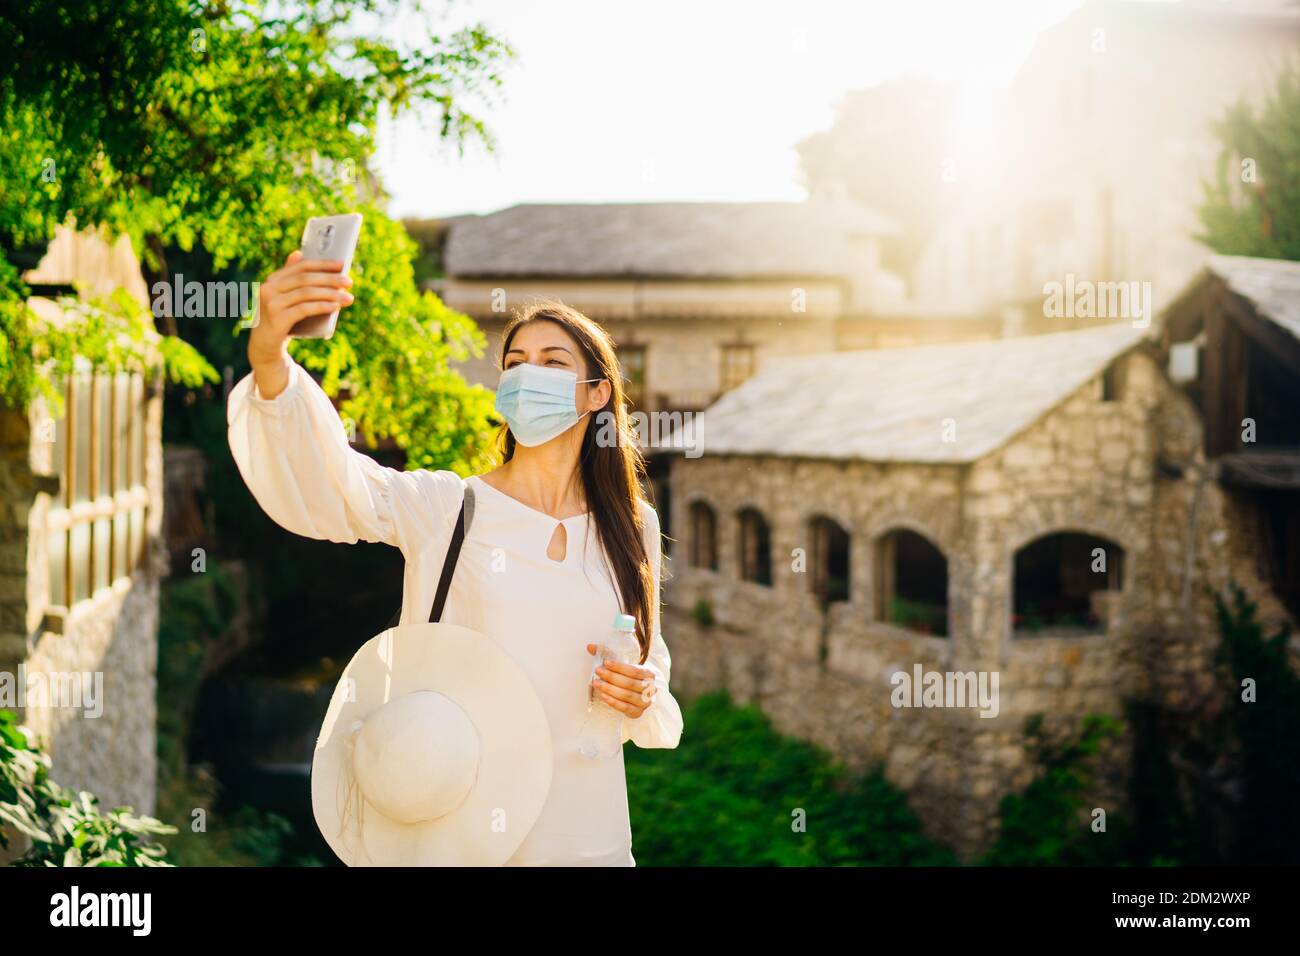 Junge Touristenfrau mit Gesichtsmaske, die während des Coronavirus-Pandemieausbruchs in europäische Städte reist. Reisen Sie nach Europa unter COVID-19. Besuch lokal Stockfoto